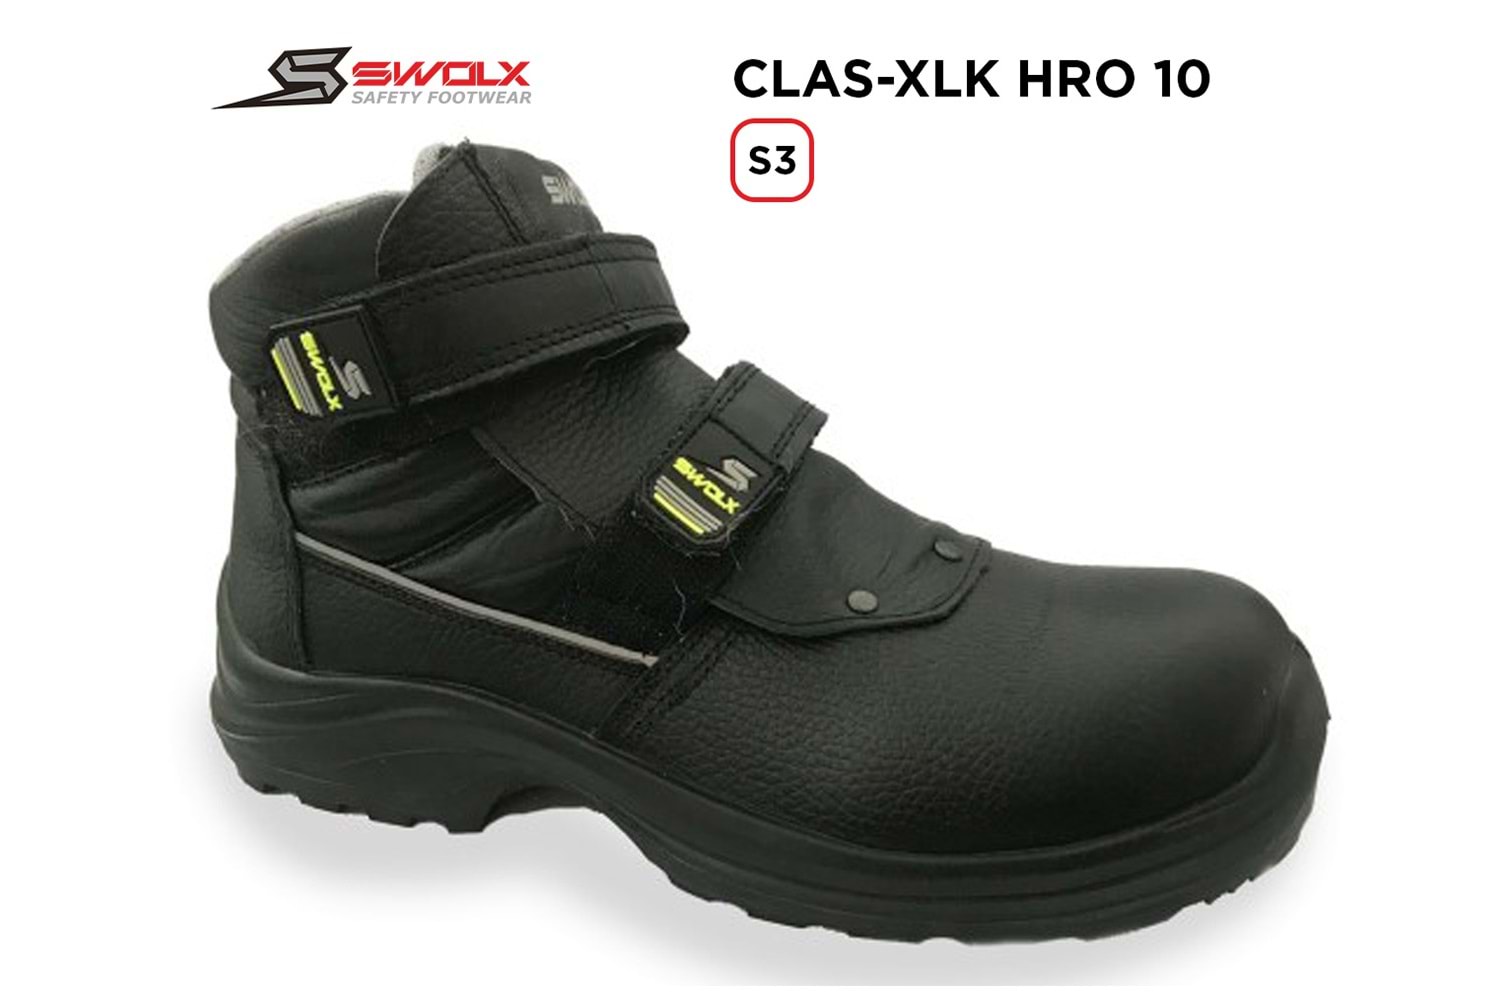 Swolx İş Ayakkabısı - Clas-Xlk Hro 10 S3 - 42